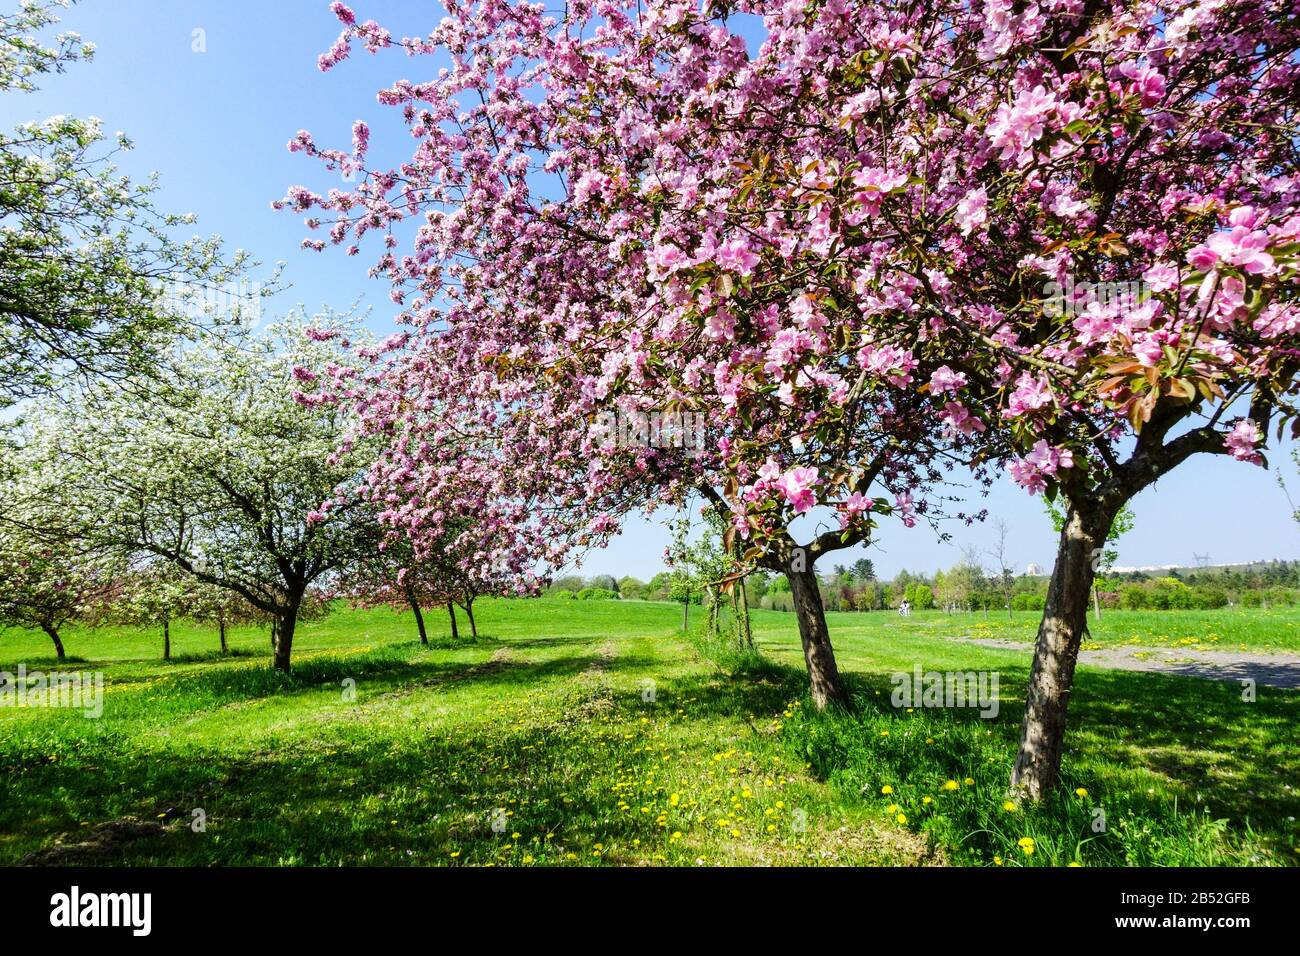 Frühling blühende Bäume in Blüte Sonnentag, schönes Wetter. Rosa Blüten Apfelbäume auf Obstgarten Wiese Prag dendrologischen Garten Stockfoto